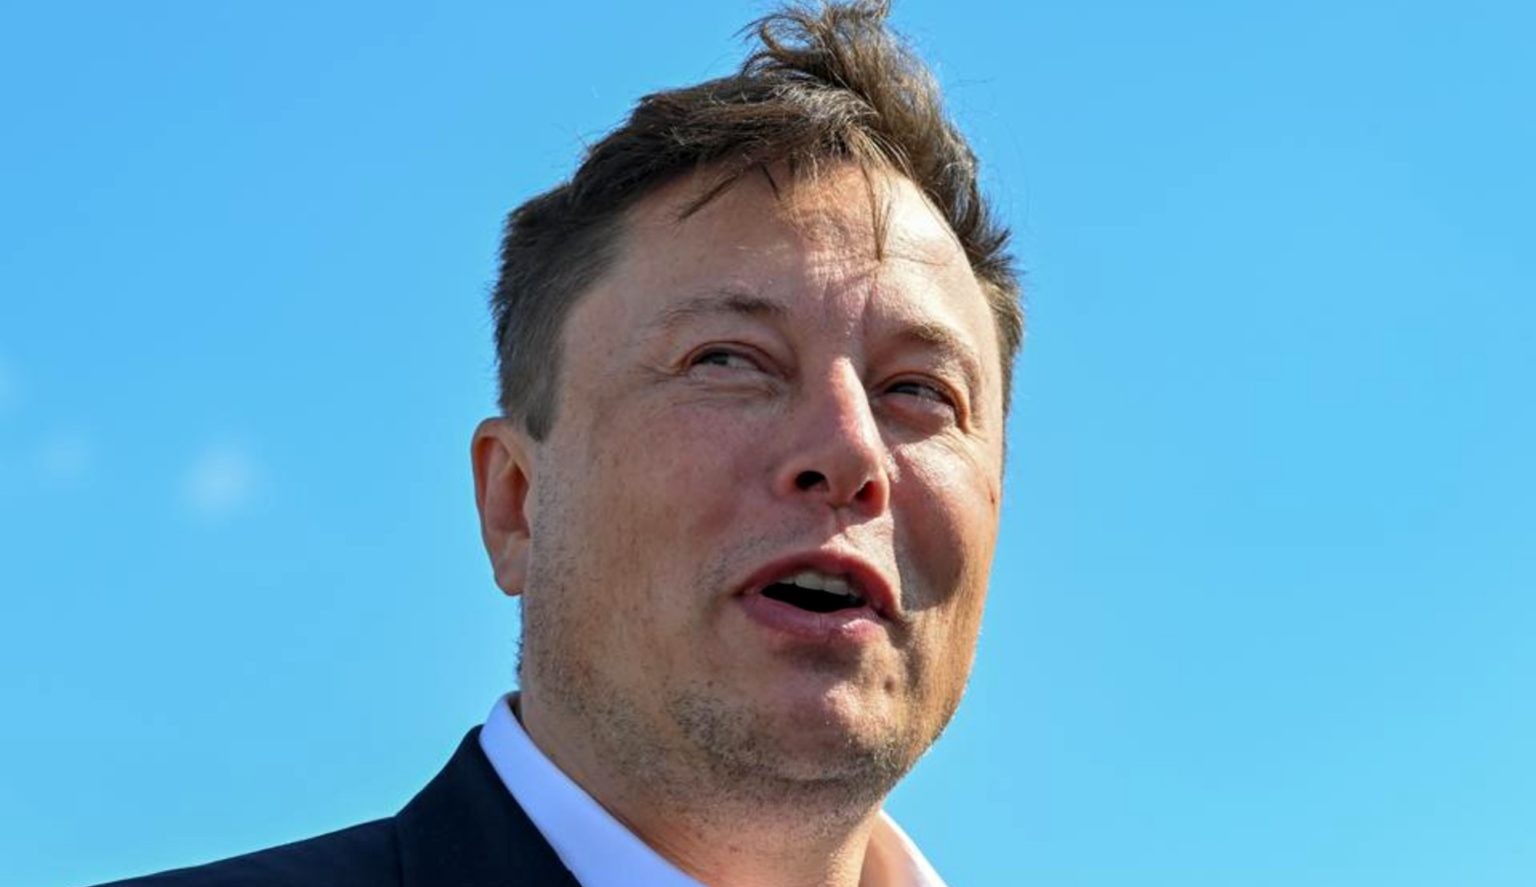 Elon Musk dá ultimato aos funcionários: 'Retornam ao trabalho ou vão embora'